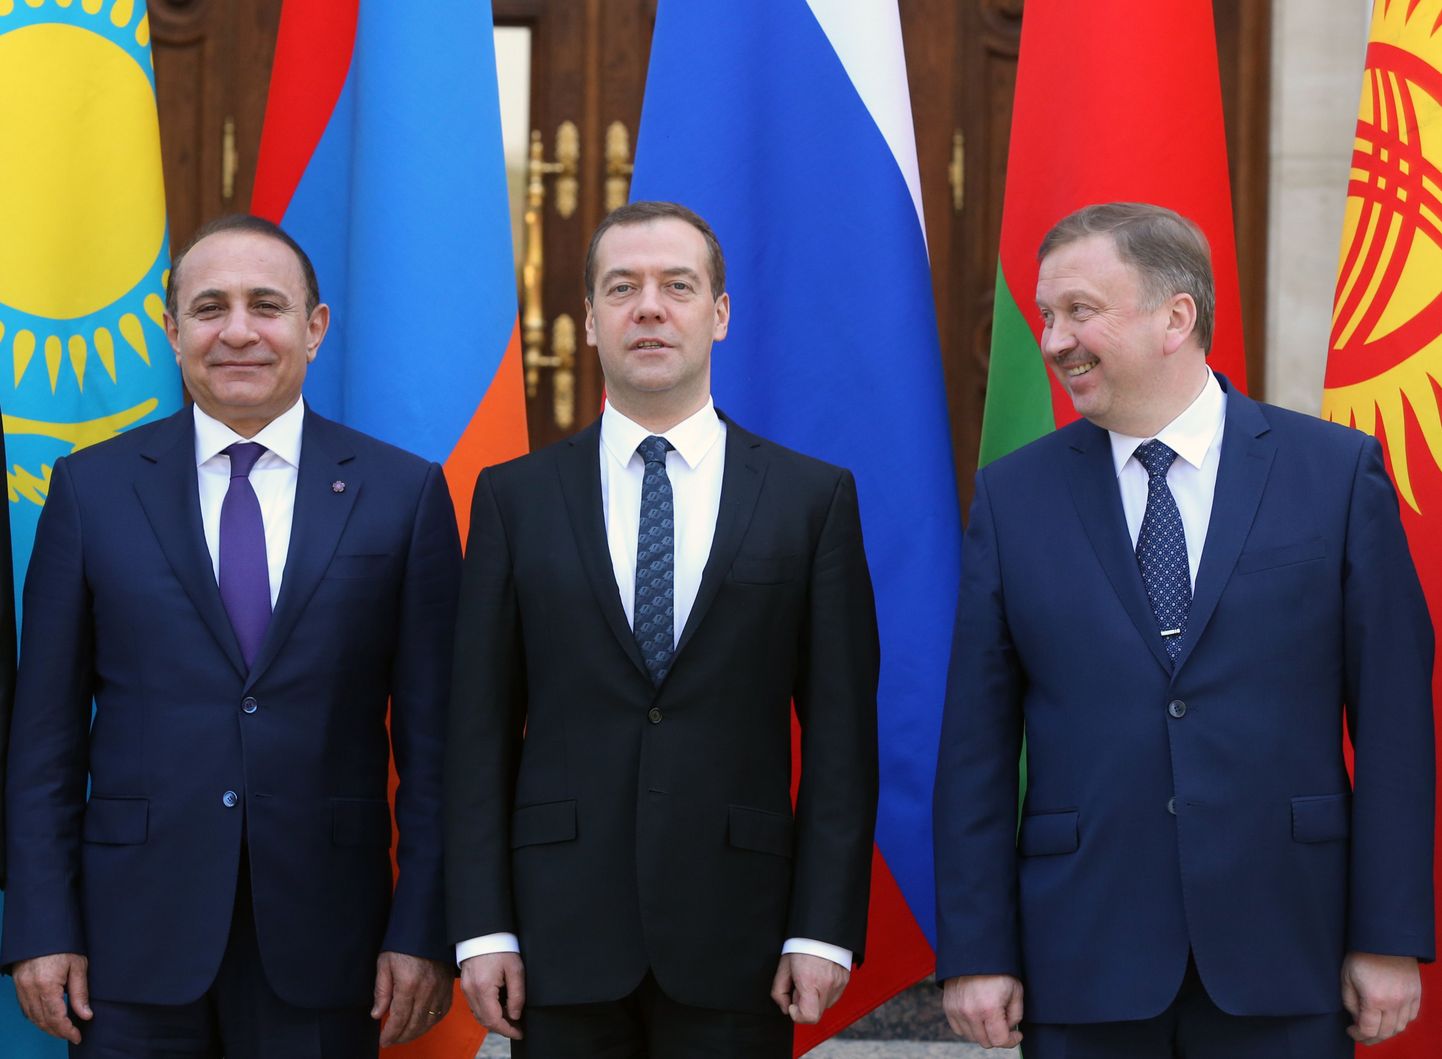 Armeenia peaminister Hovik Abrahamjan, Vene peaministri Dmitri Medvedevi ja Valgevene peaministri Andrei Kobjakoviga.